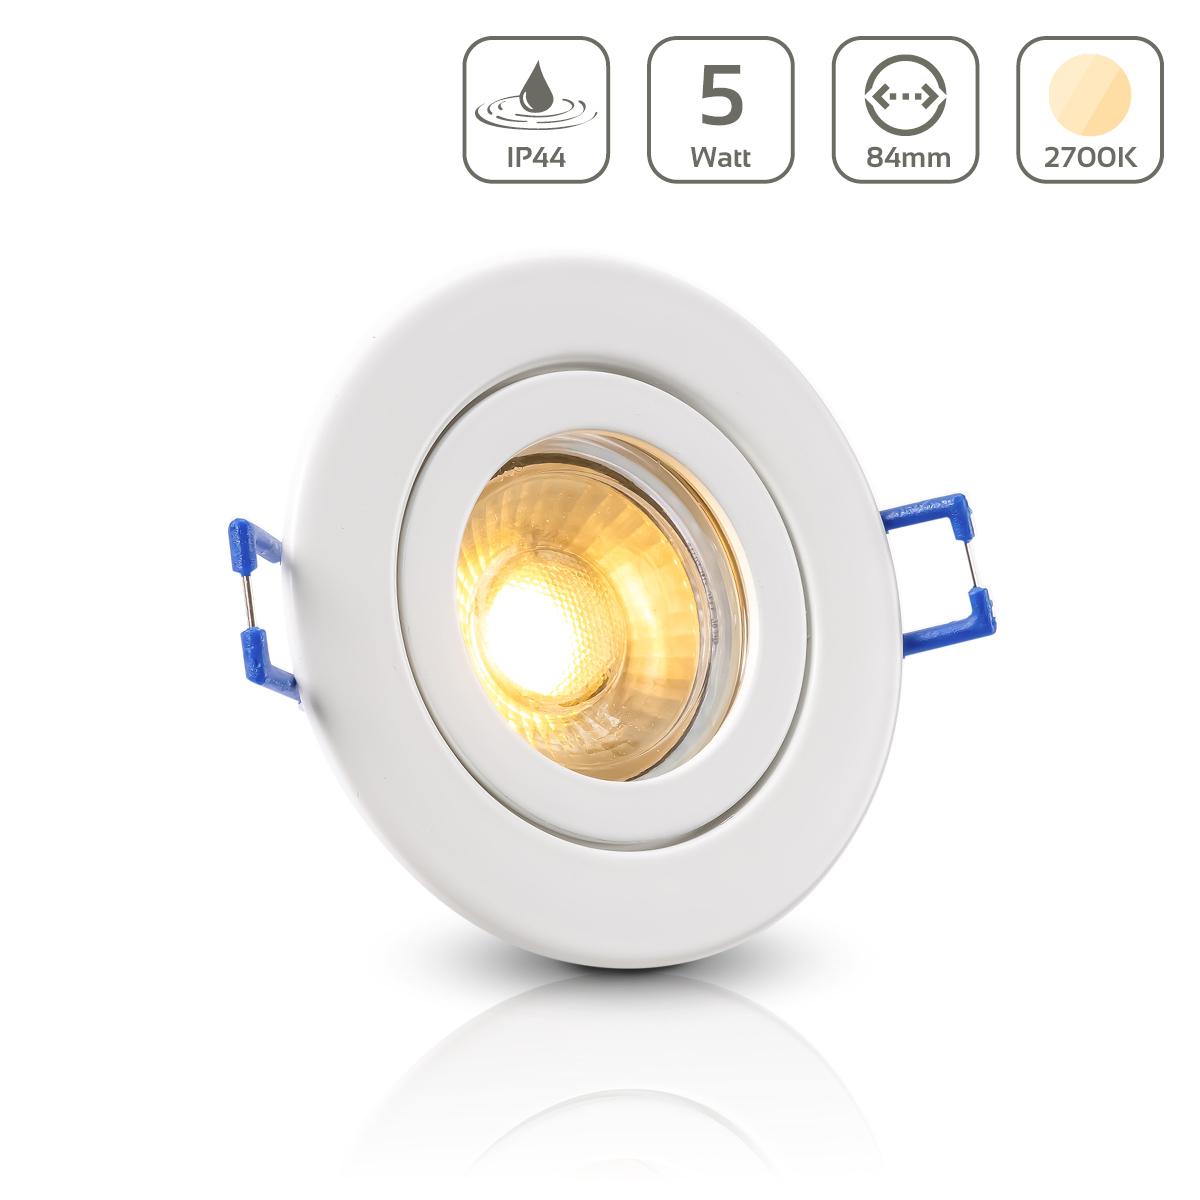 Einbauspot IP44 rund - Farbe: weiß - LED Leuchtmittel:  GU10 5W warmweiß